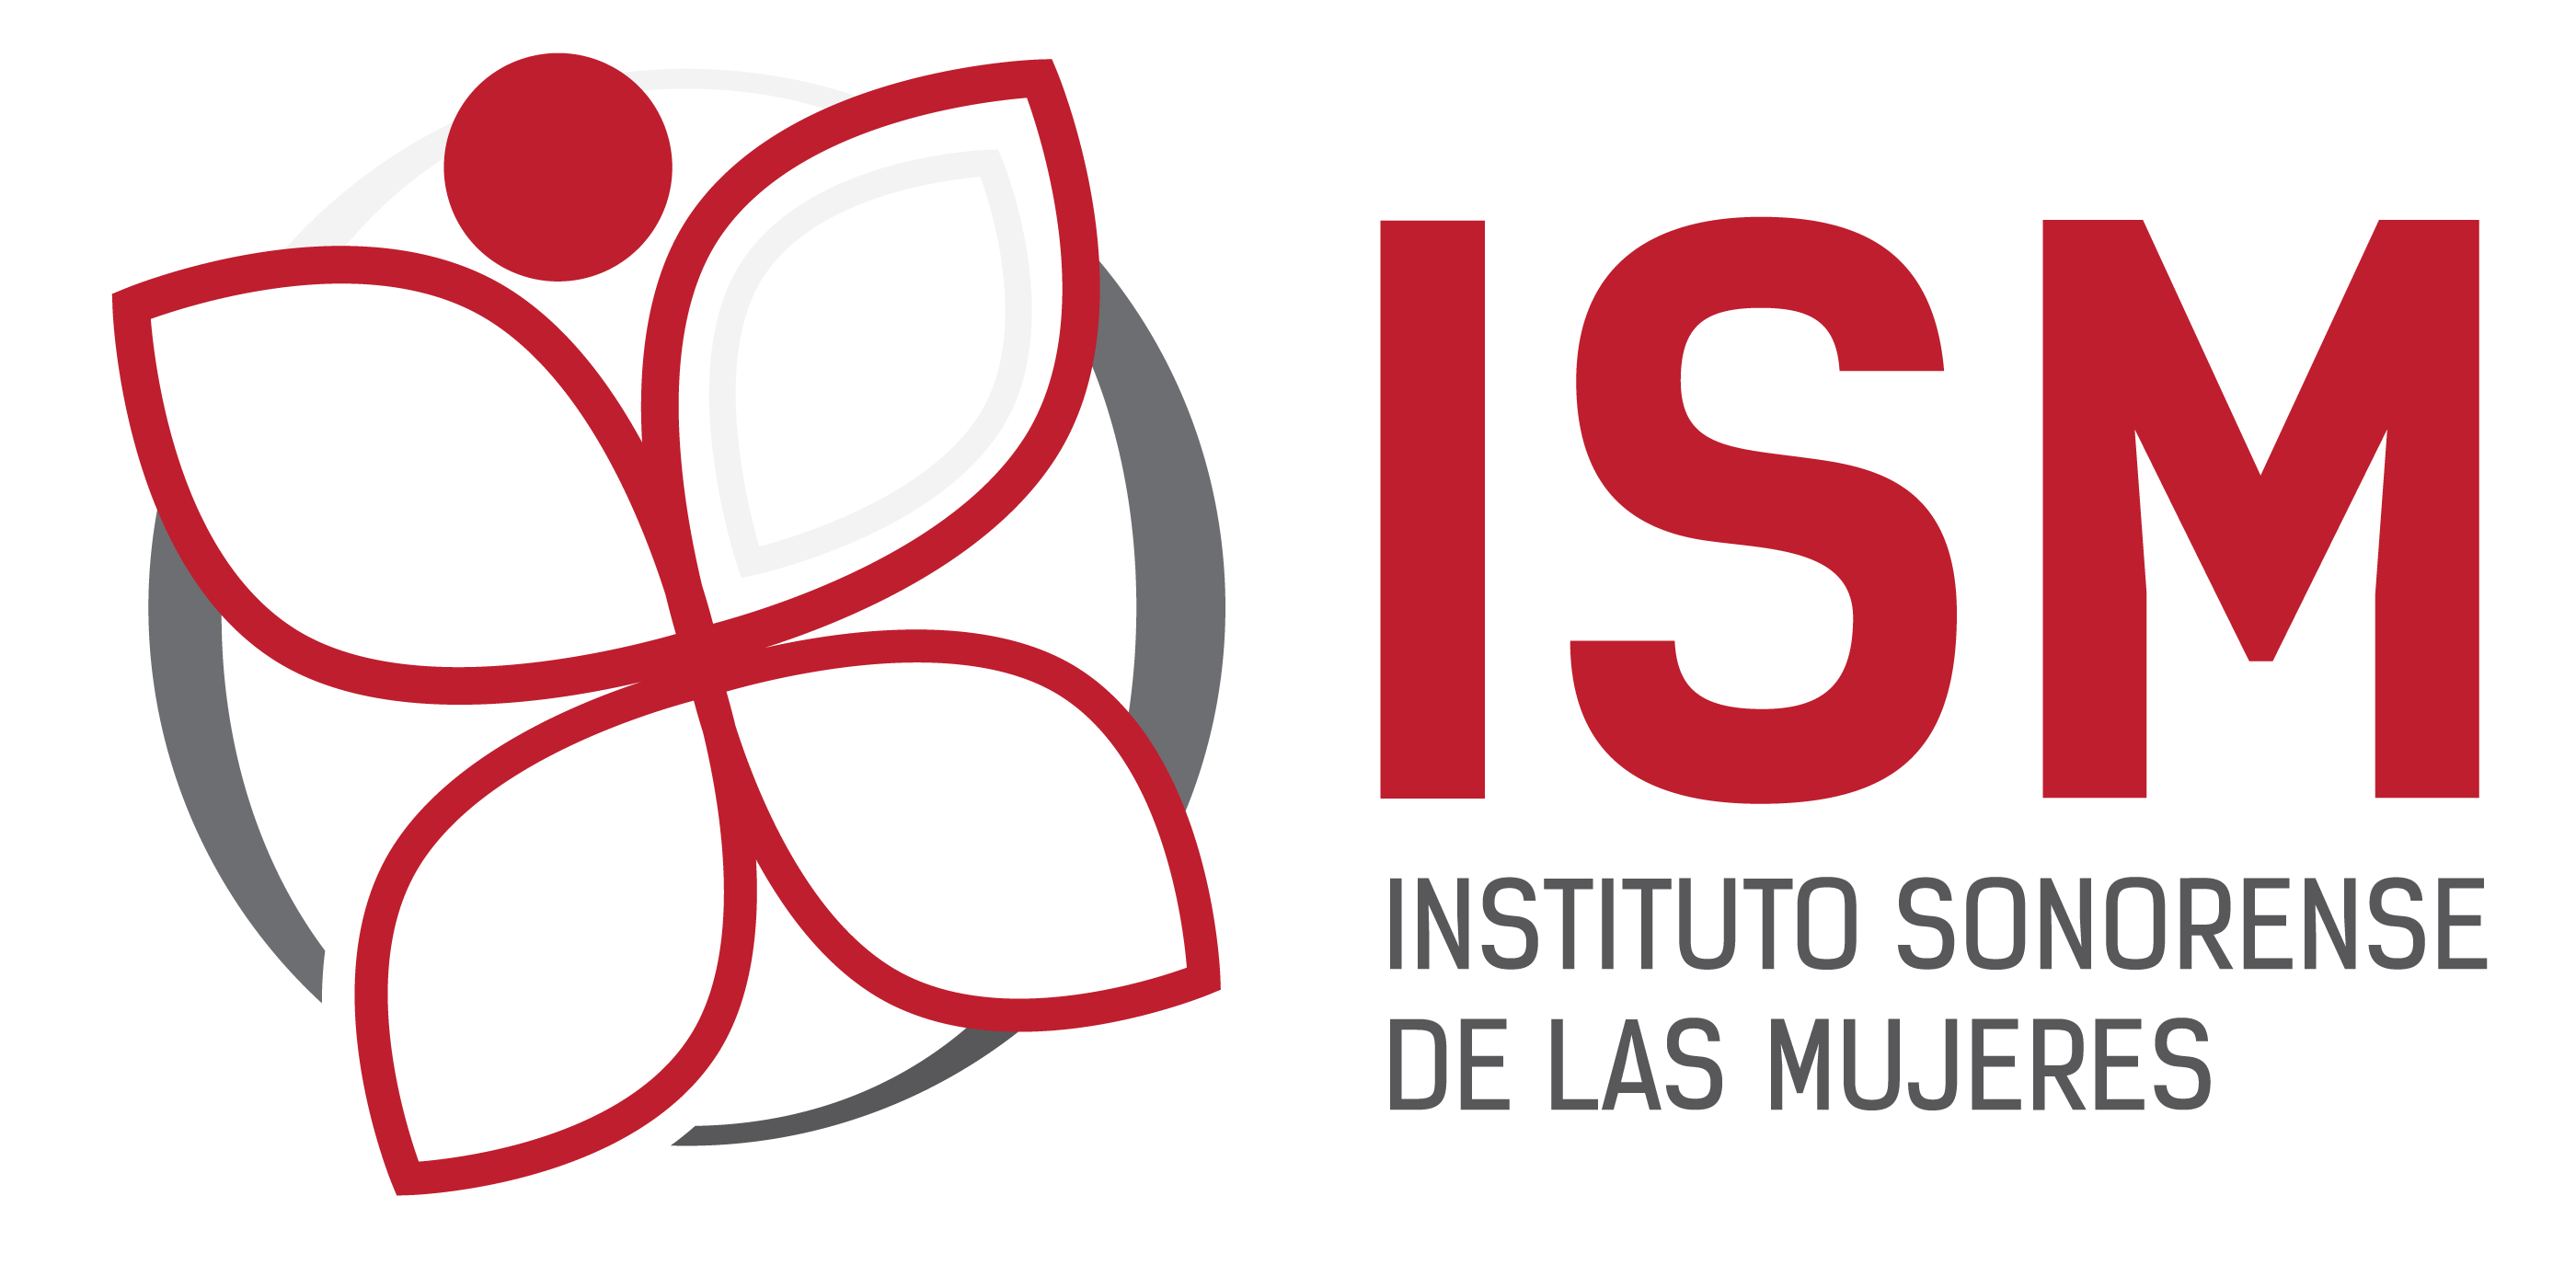 Instituto Sonorense de las Mujeres